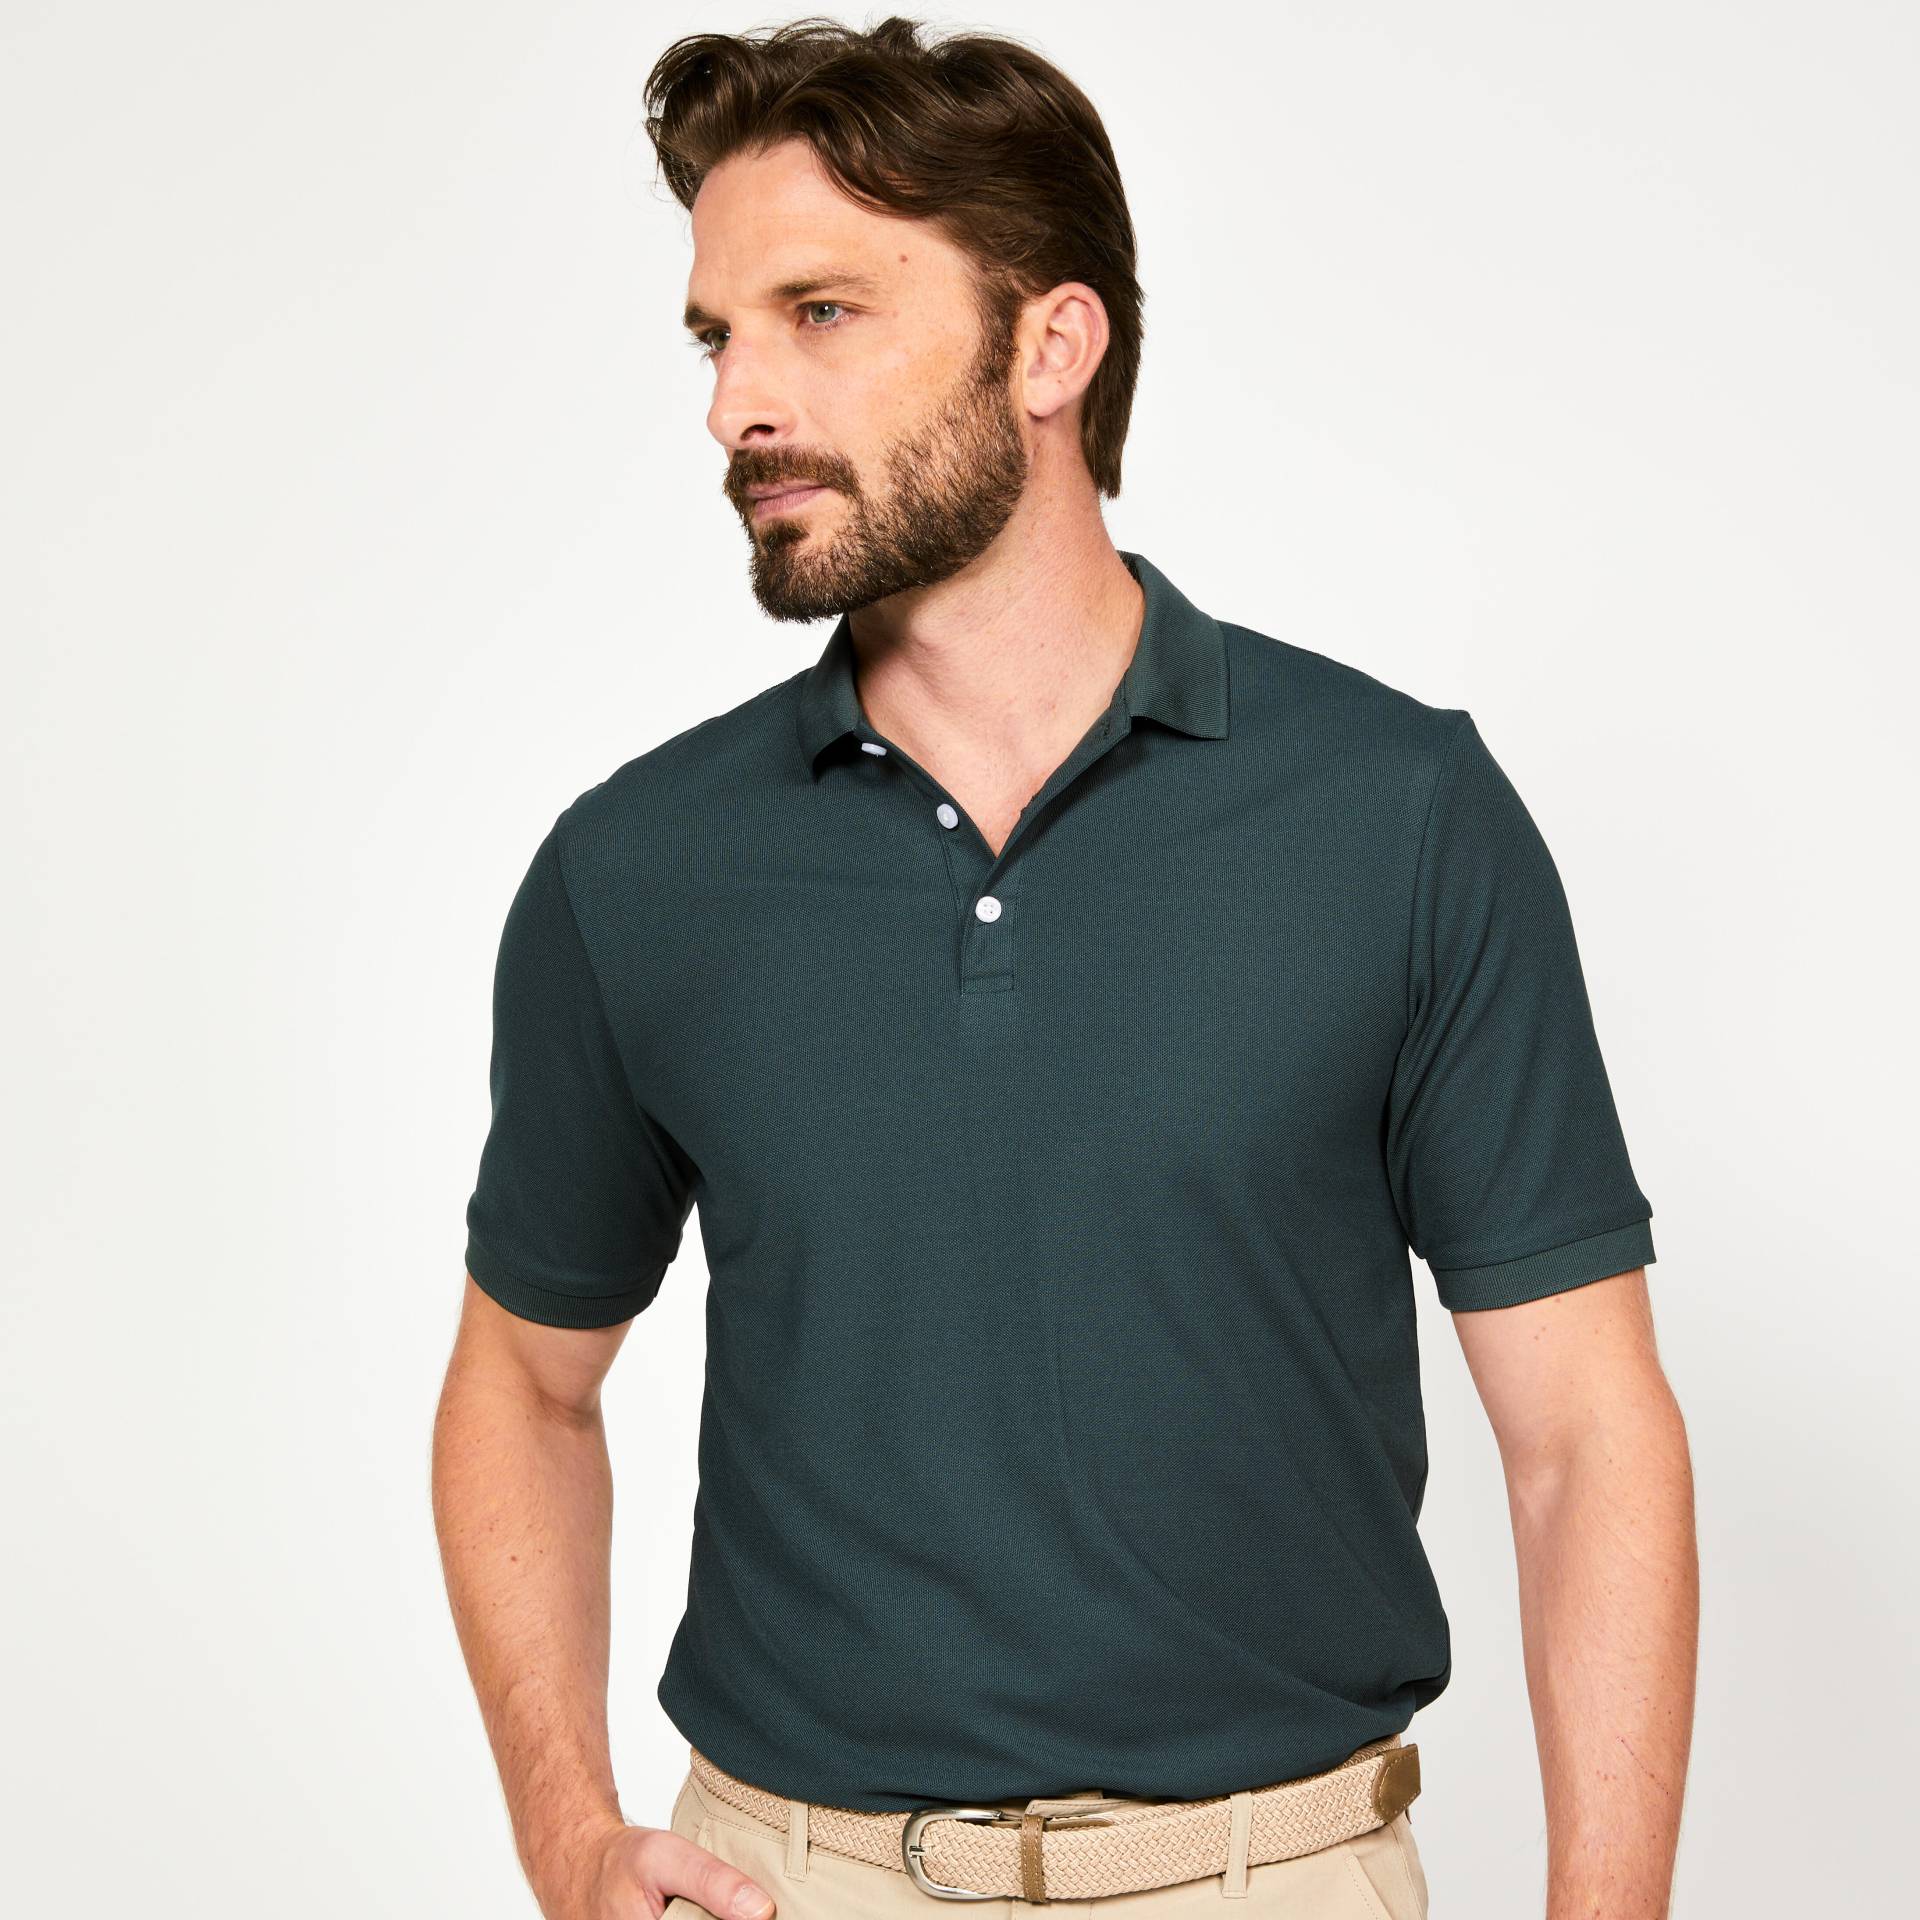 Herren Golf Poloshirt kurzarm - WW500 grün von INESIS